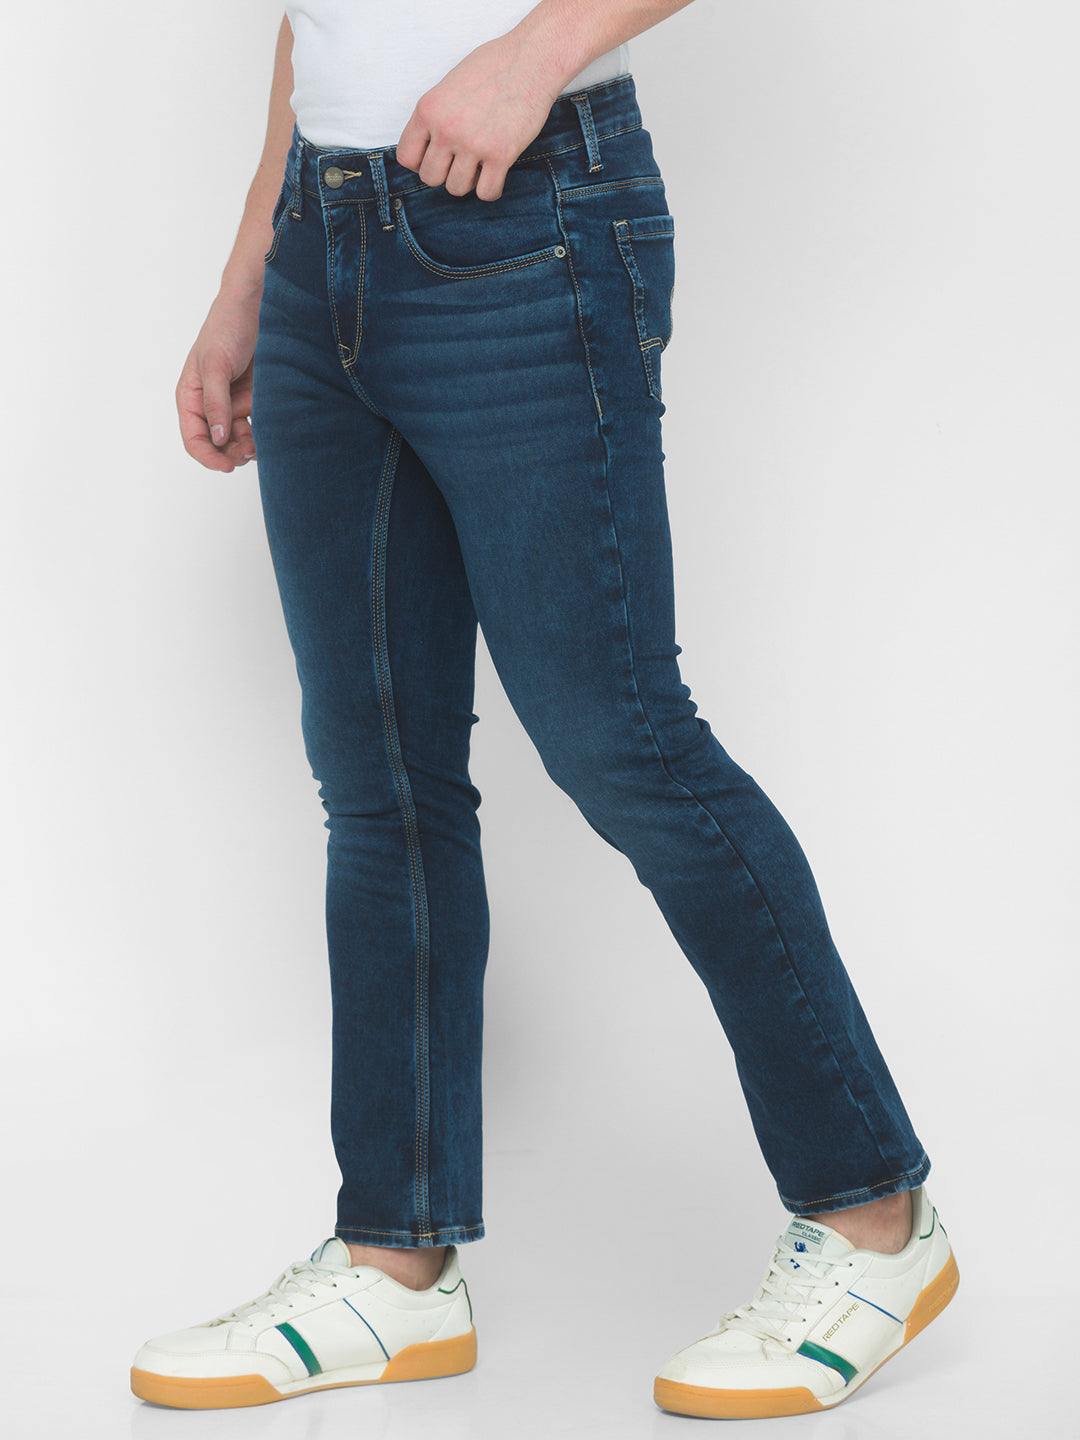 Spykar Men Dark Blue Cotton Bootcut Fit Regular Length Jeans (Rafter ...